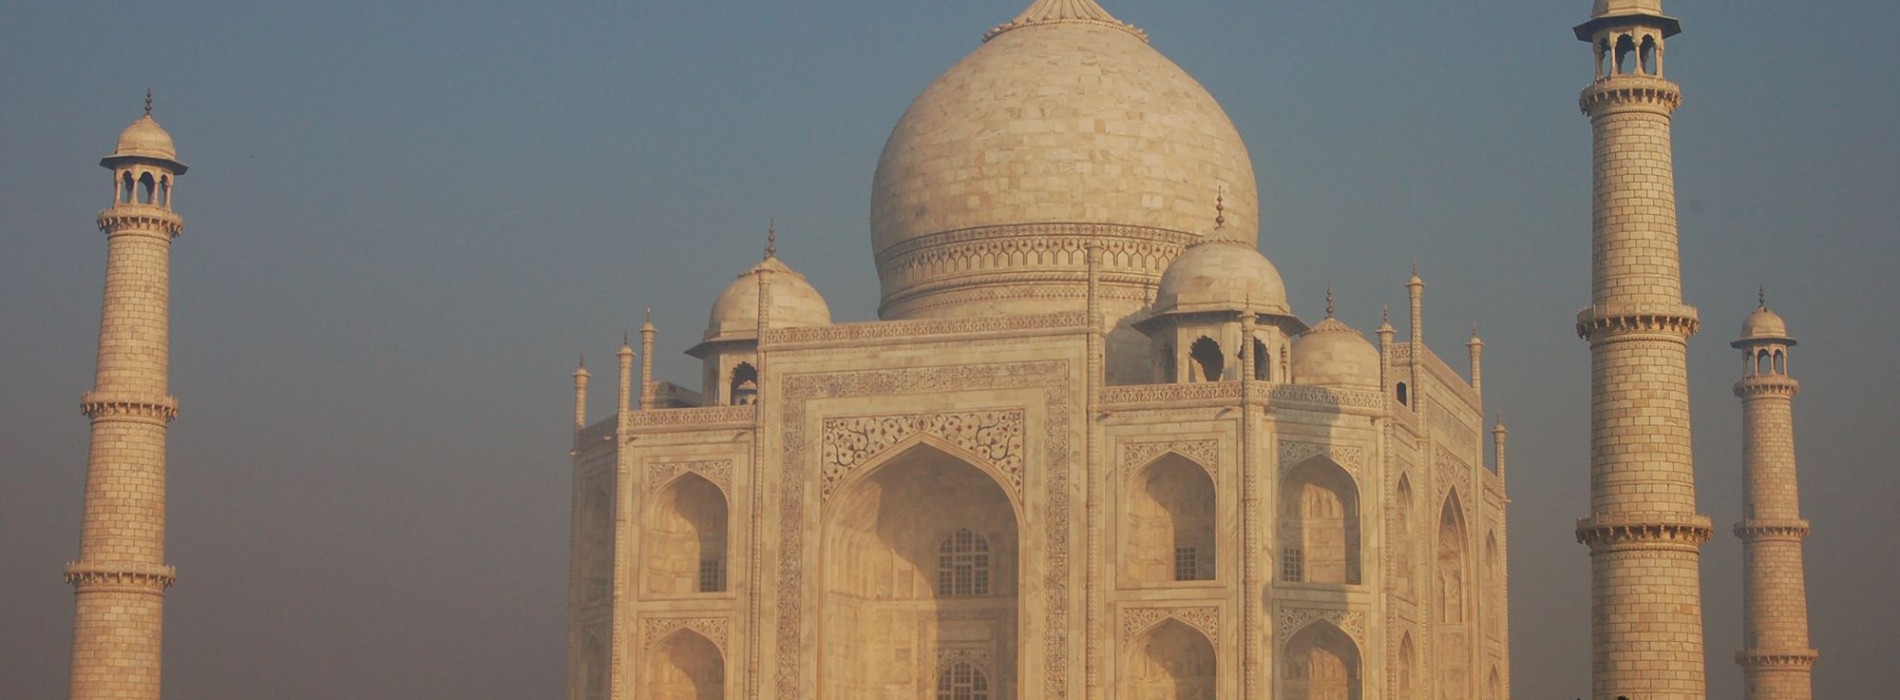 Taj_Mahal_India.jpg